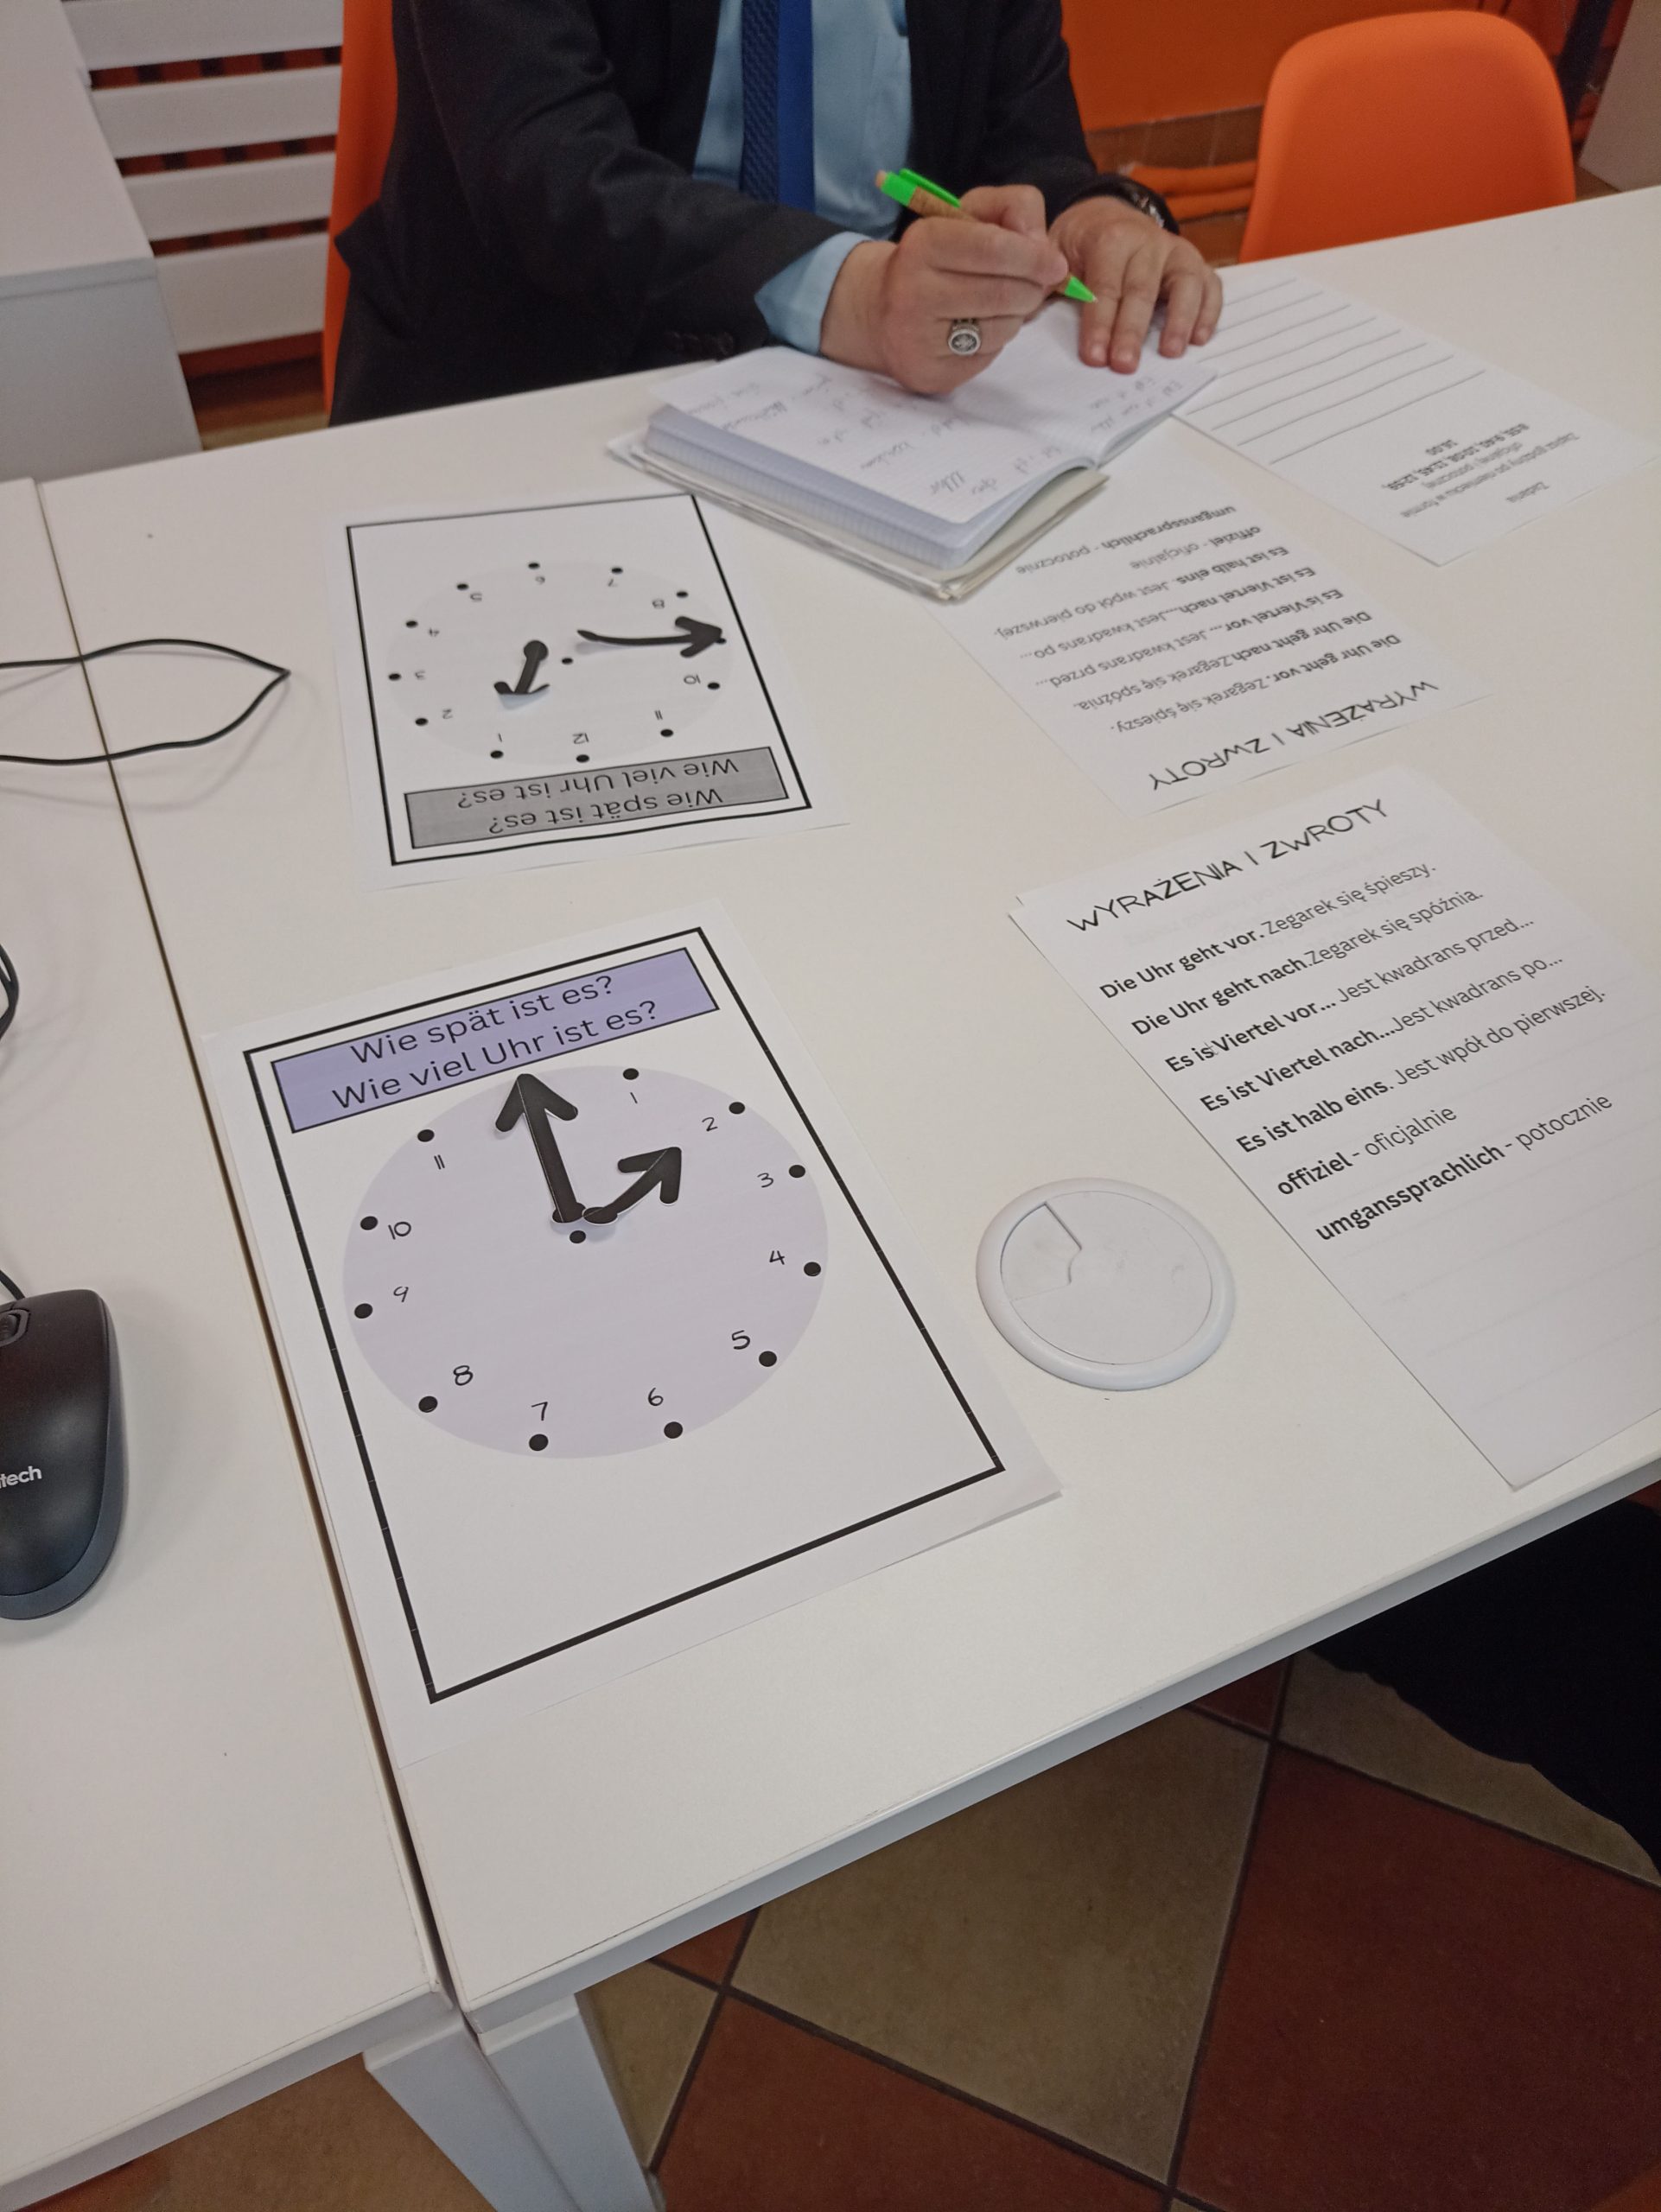 Na stole leżą karty pracy, na jednej grafika przedstawiająca analogową tarczę zegara bez wskazówek, na drugiej są wyrażenia i zwroty po niemiecku.